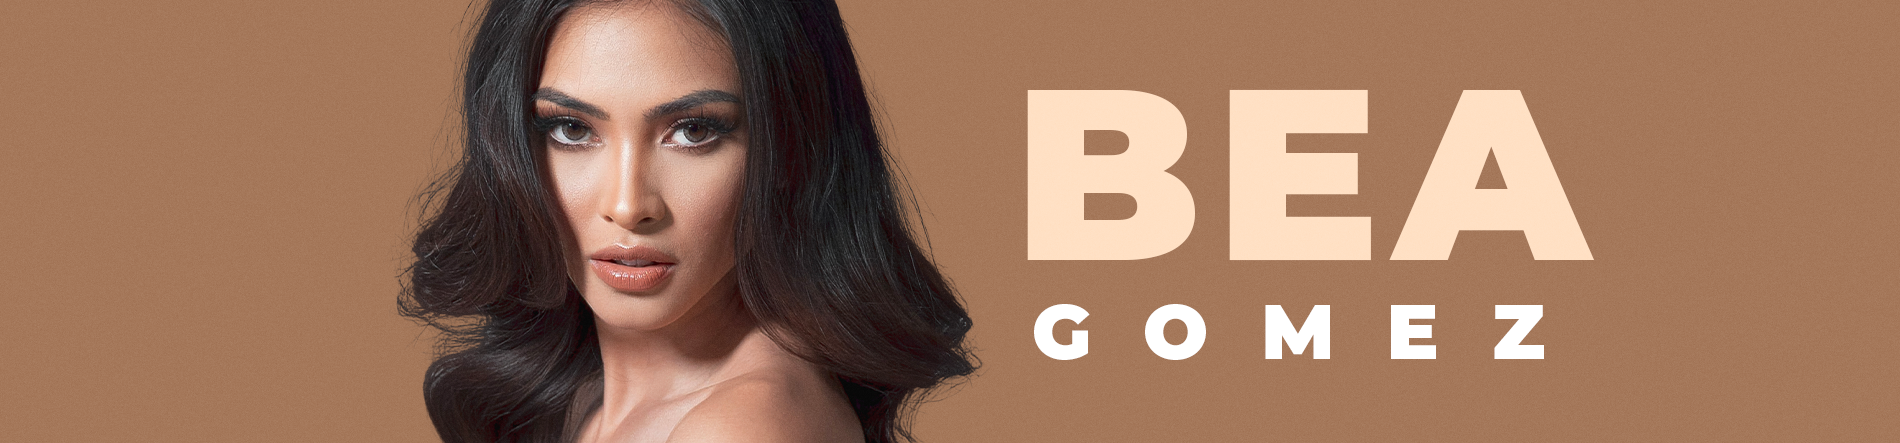 Bea Gomez Desktop Banner